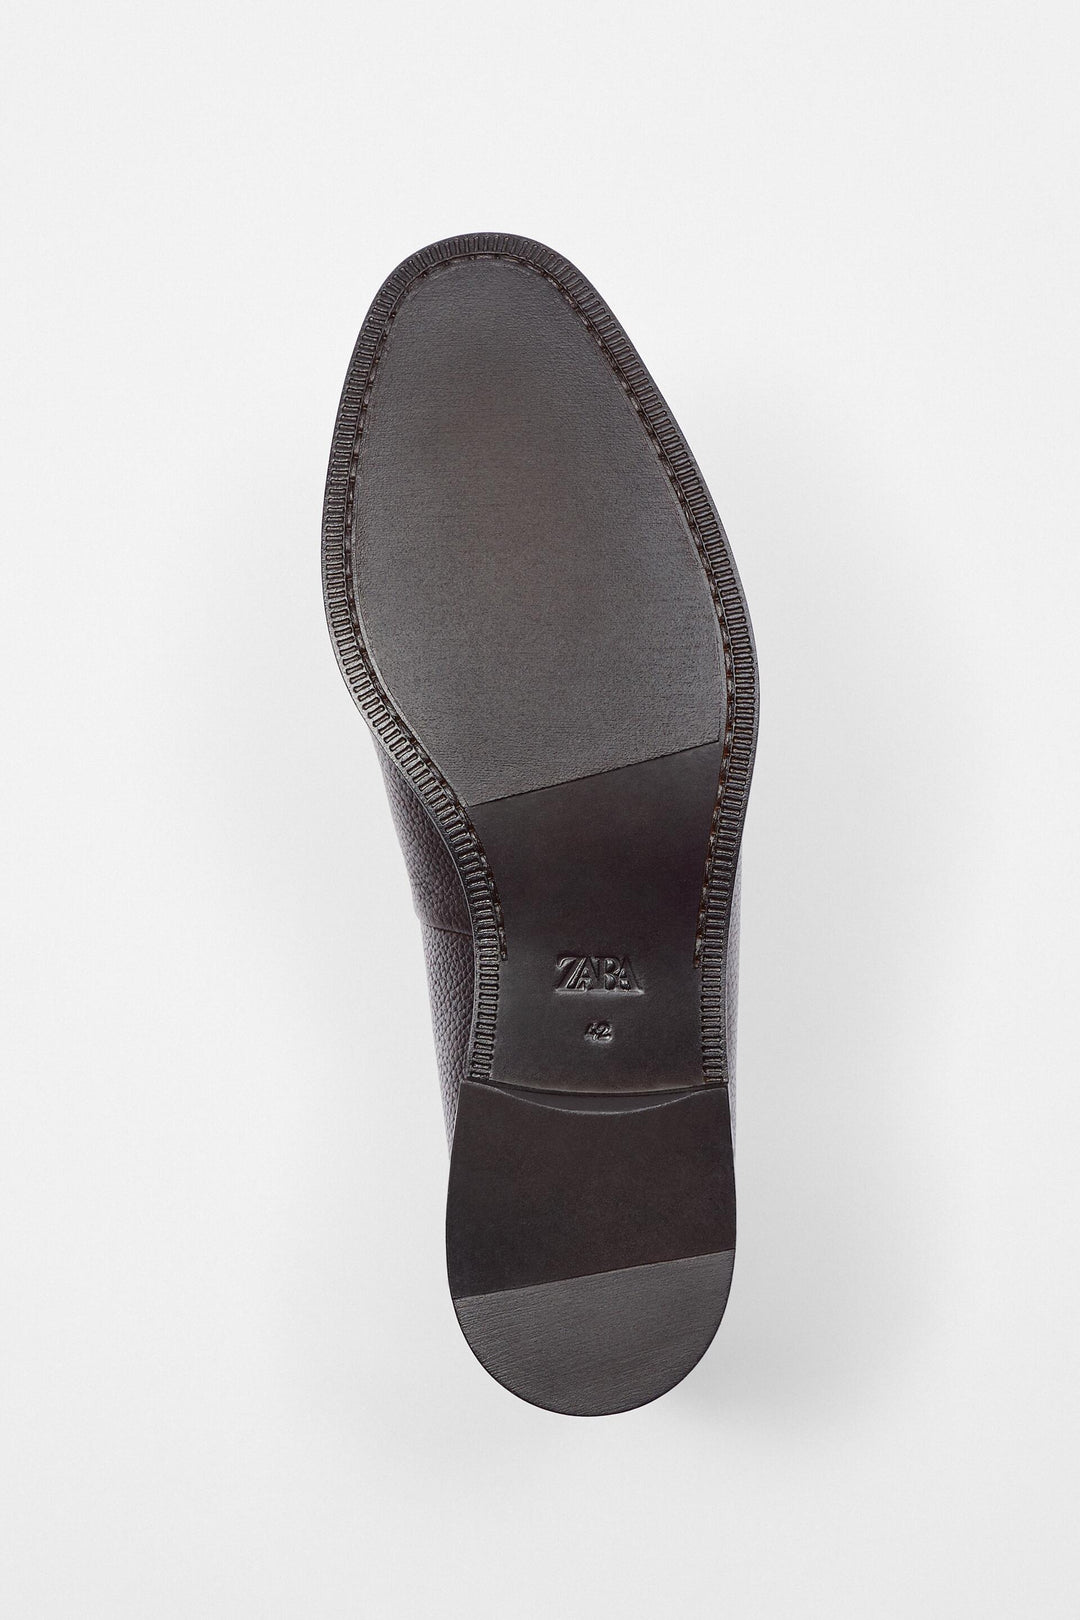 Chaussures marque_Zara, genre_Homme Moudda Tunisie1